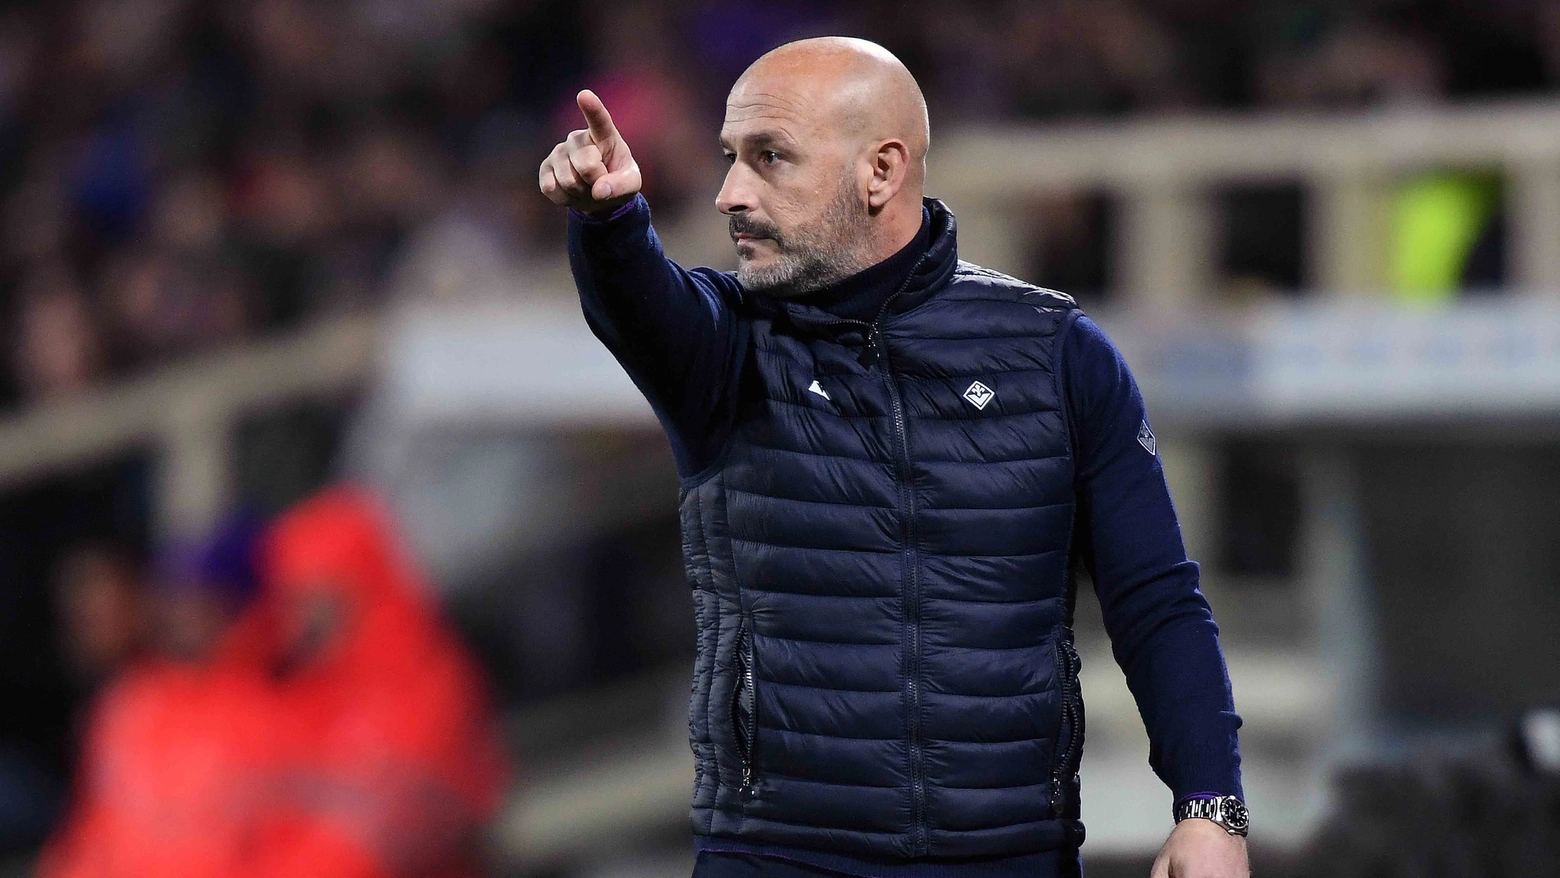 L'allenatore della Fiorentina presenta la sfida del 'Via del Mare' e commenta l'arriva dell'attaccante dalla Roma